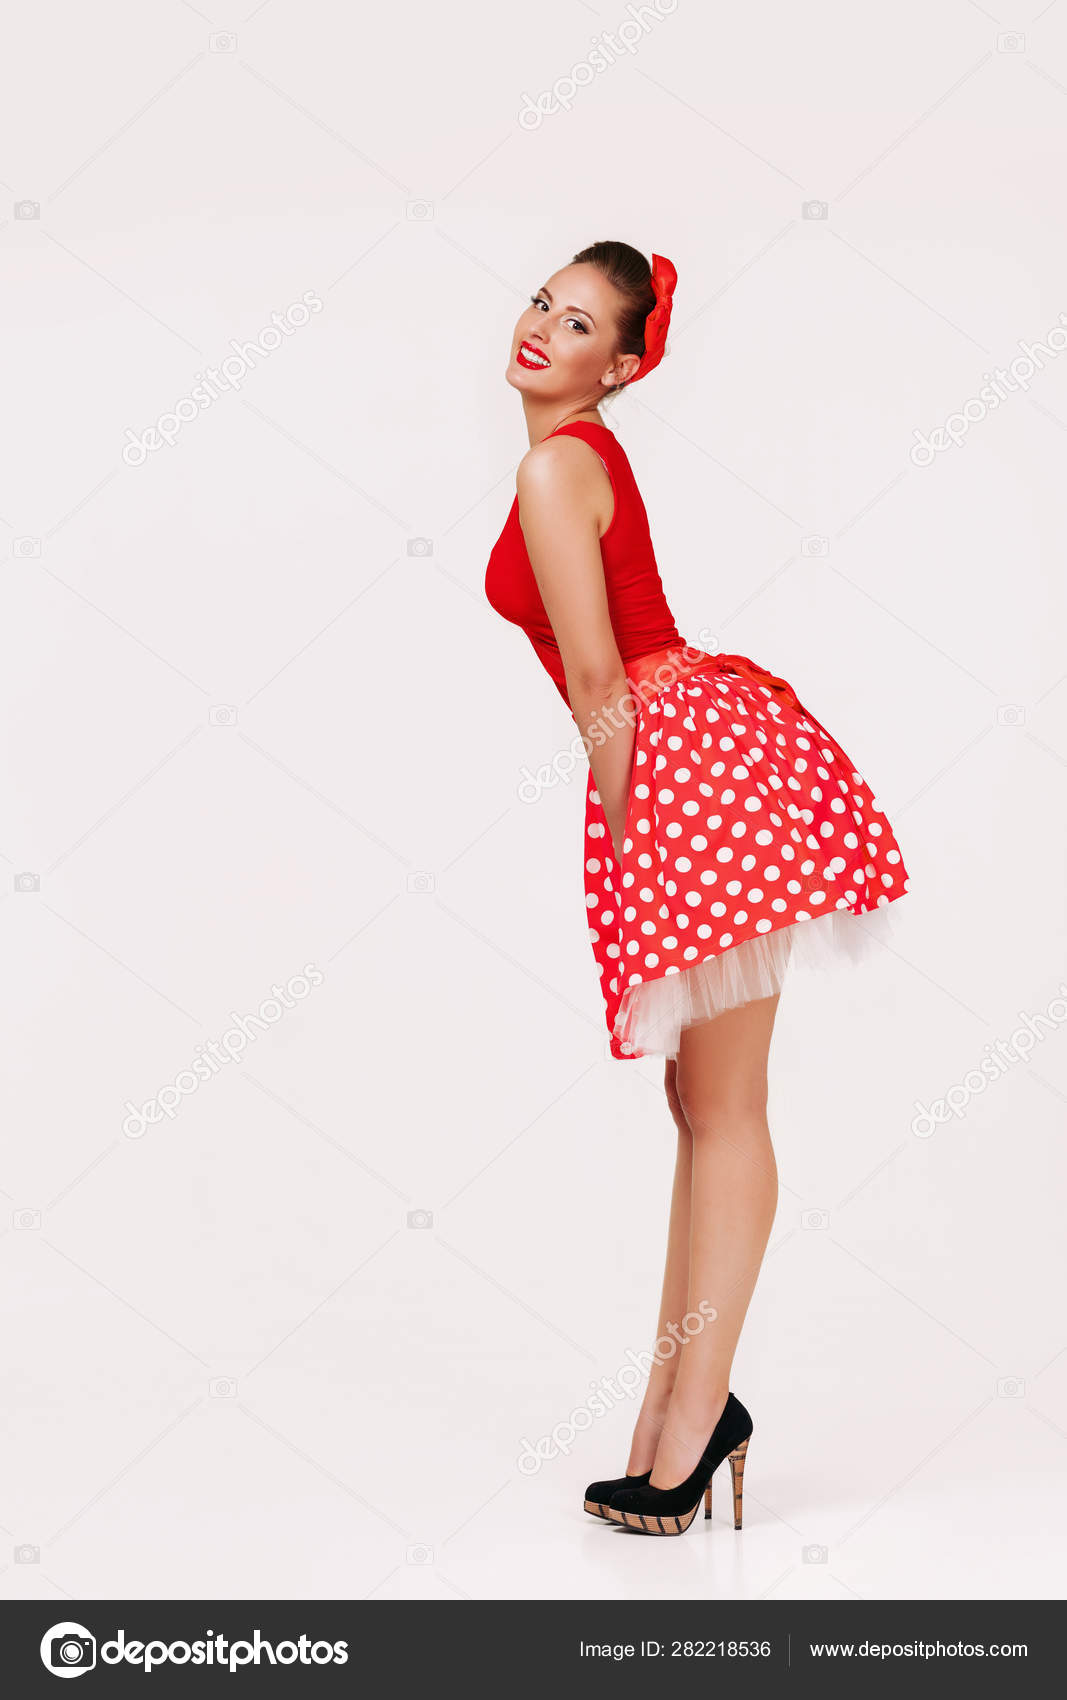 Sonriente pin mujer en vestido rojo lunares: fotografía de stock © erstudio #282218536 |